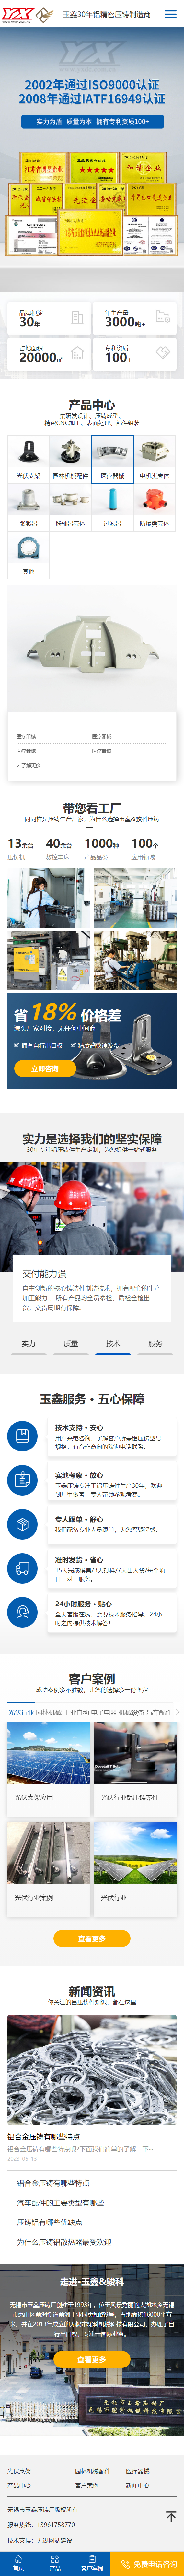 无锡市玉鑫压铸厂营销型网站建设 手机端预览图